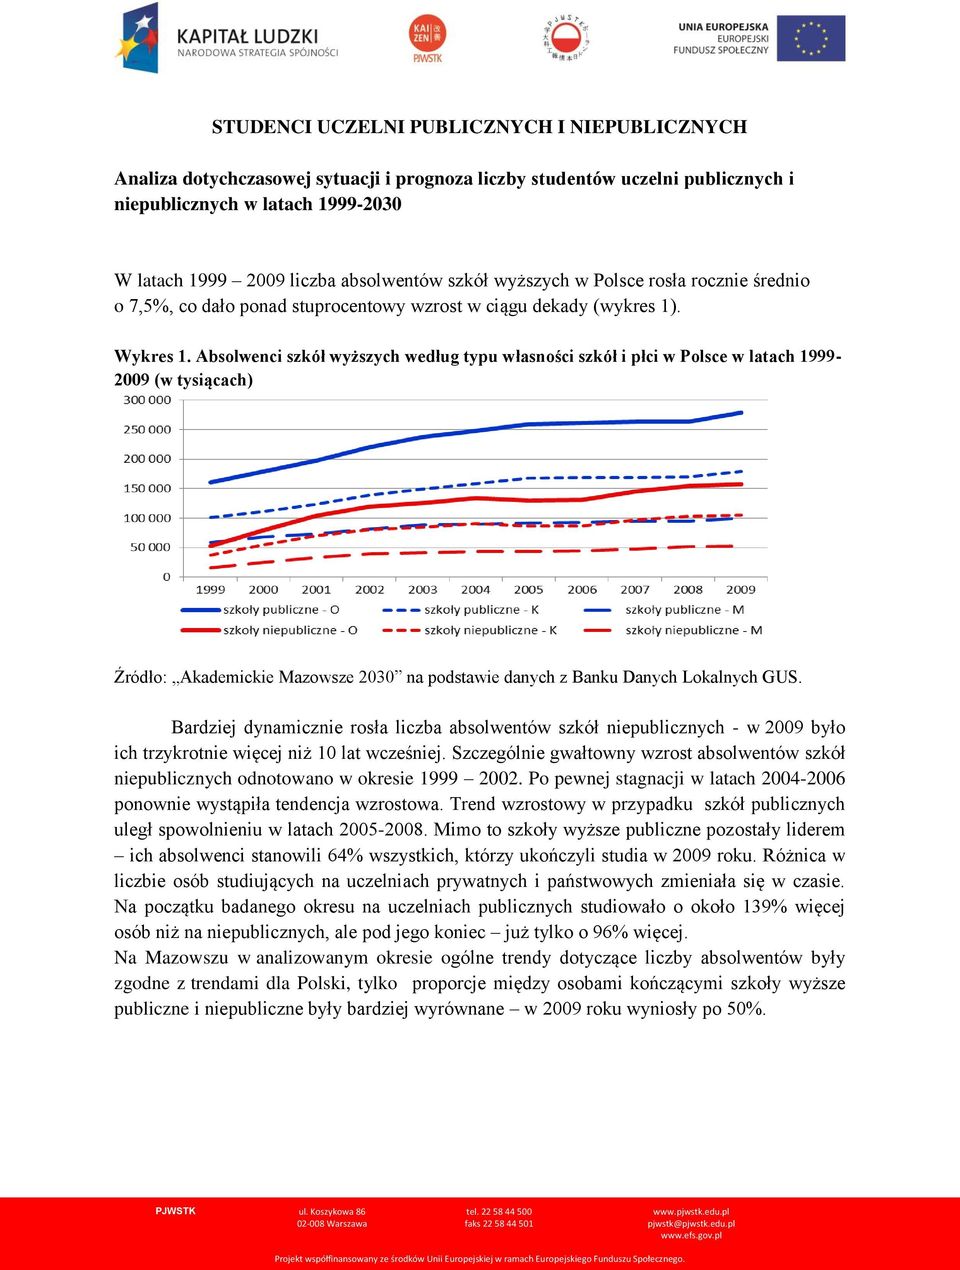 Absolwenci szkół wyższych według typu własności szkół i płci w Polsce w latach 1999-2009 (w tysiącach) Bardziej dynamicznie rosła liczba absolwentów szkół niepublicznych - w 2009 było ich trzykrotnie